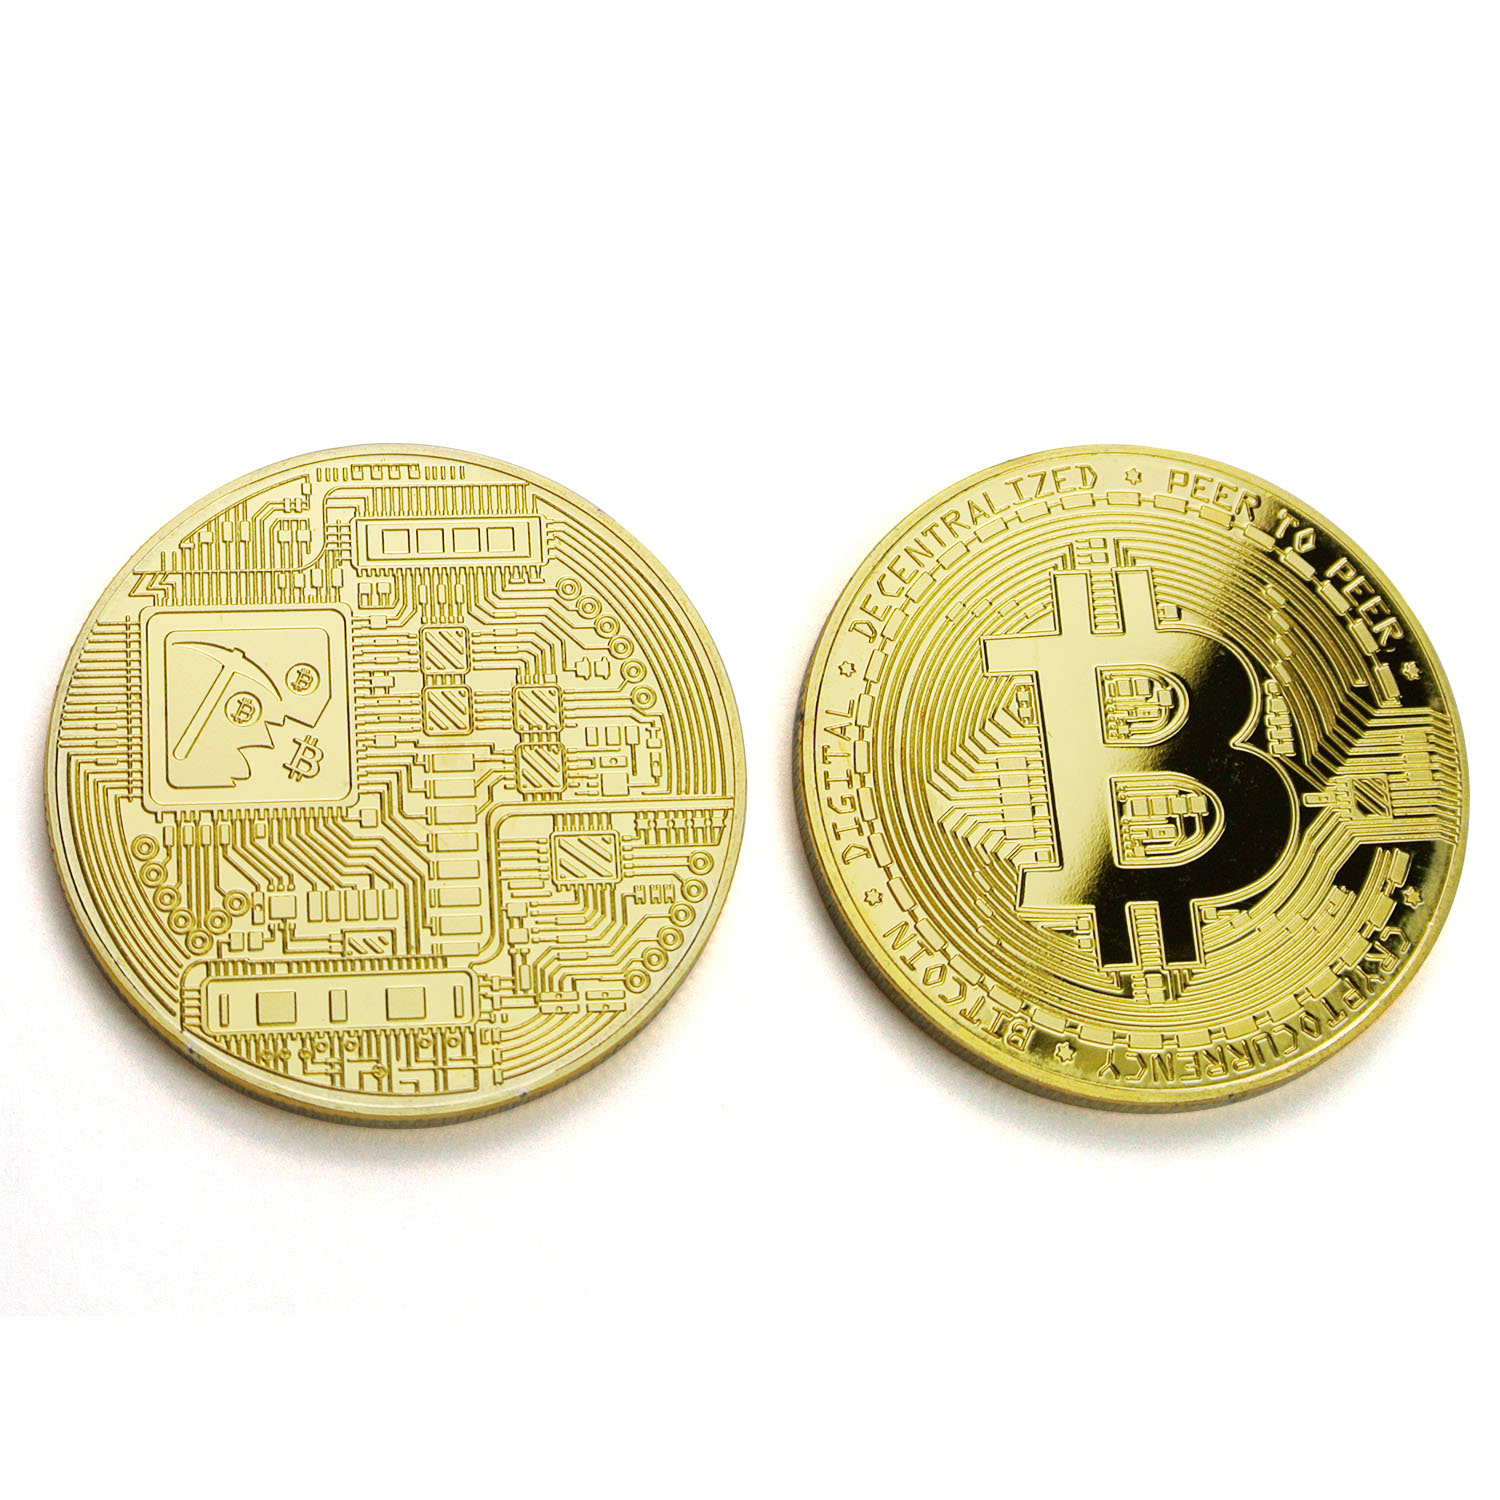 Custom Commemorative Coin Bitcoin Souvenir Coins Metal Bit Coin With Protective Case